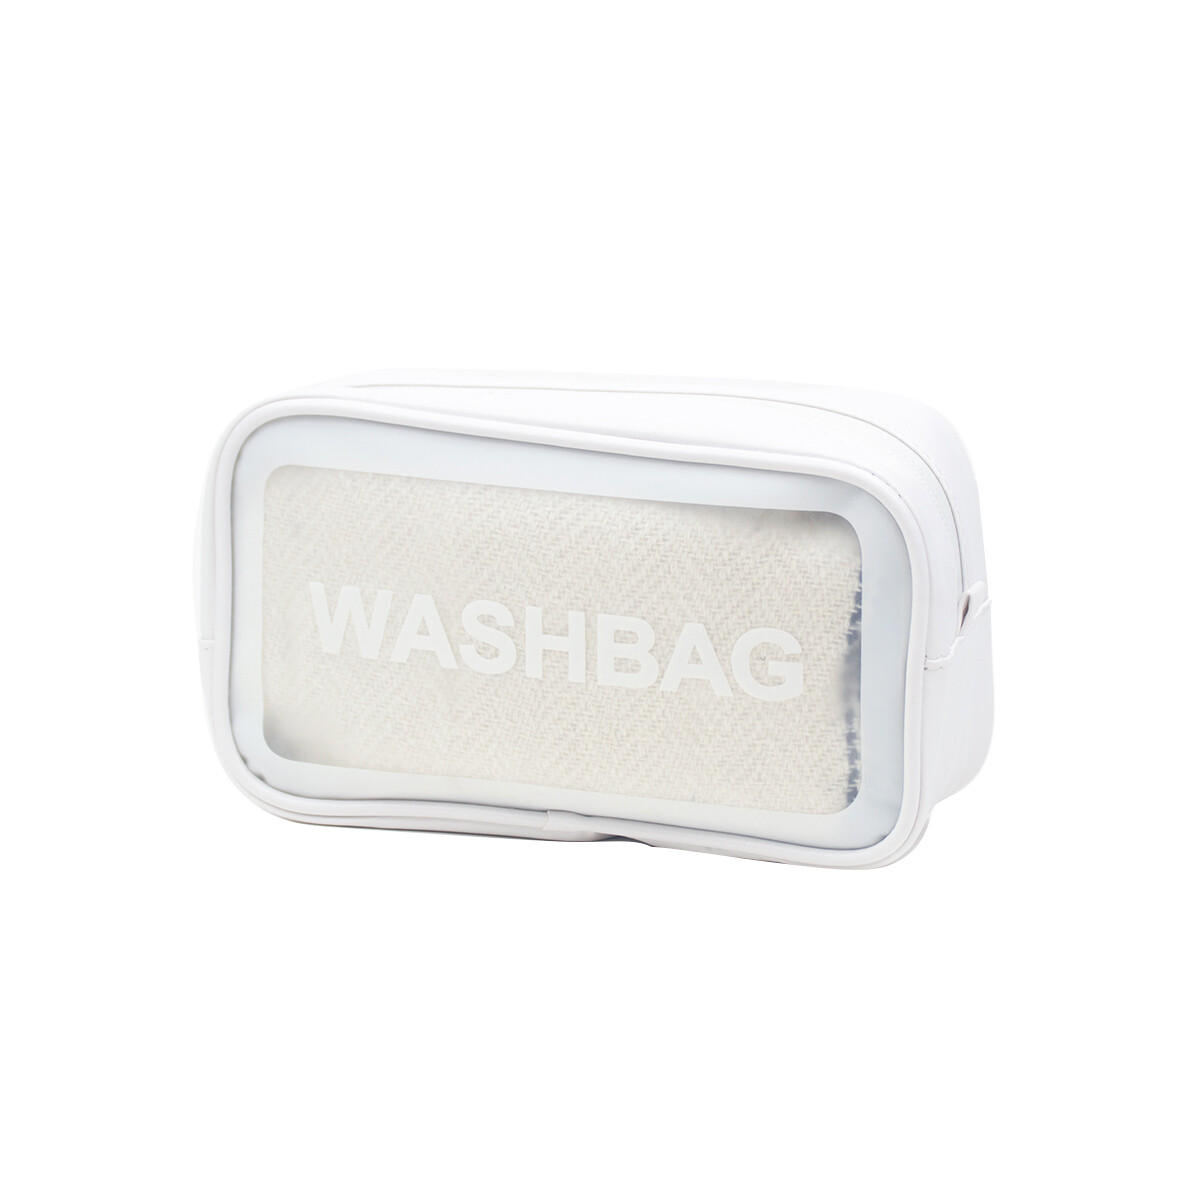 Neceser Transparente Washbag - Blanco — Mis Petates